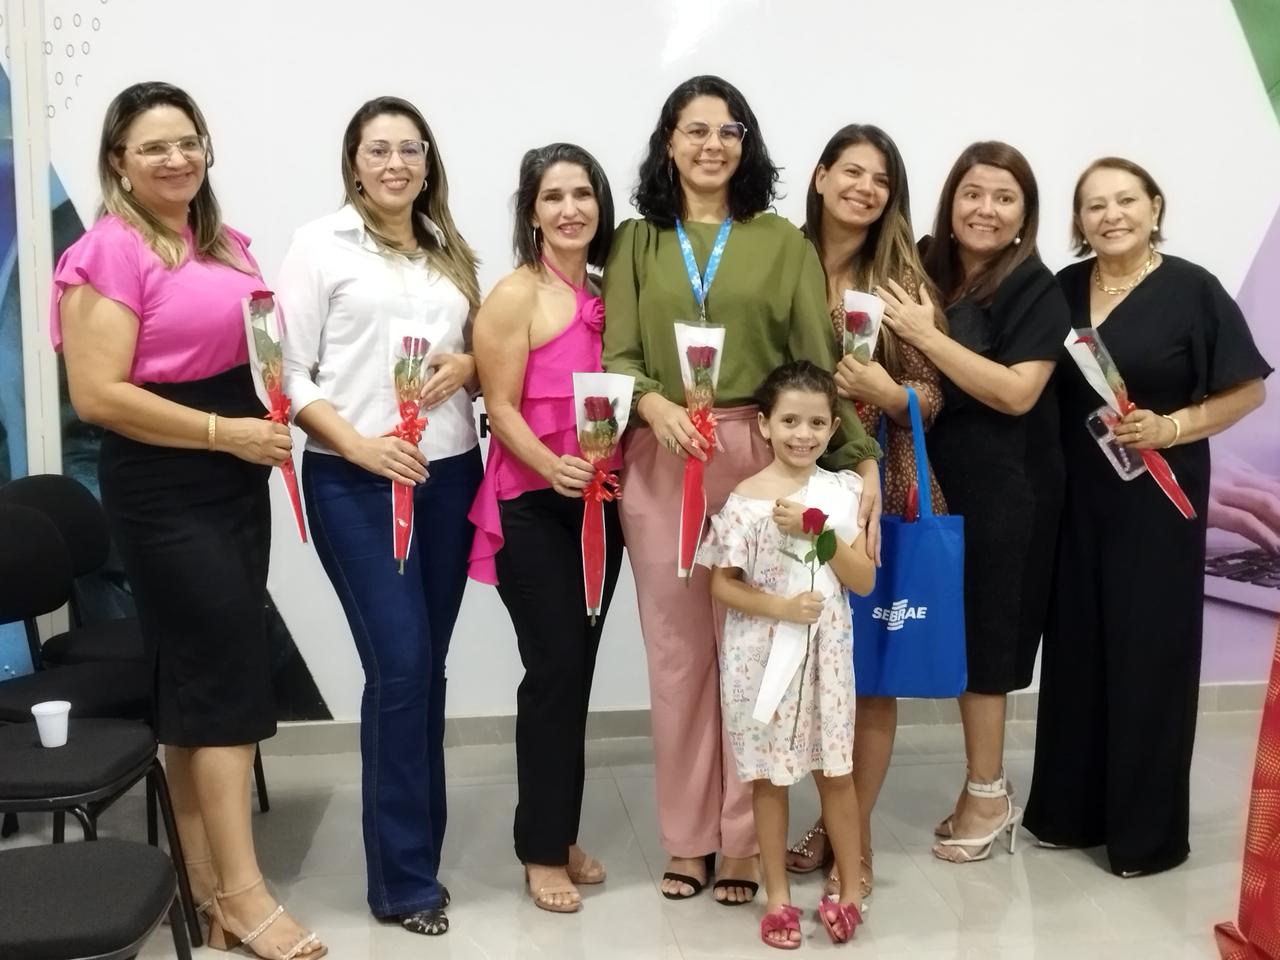 Sala do Empreendedor de Porto Franco recebe palestra em homenagem ao Dia Internacional da Mulhe...